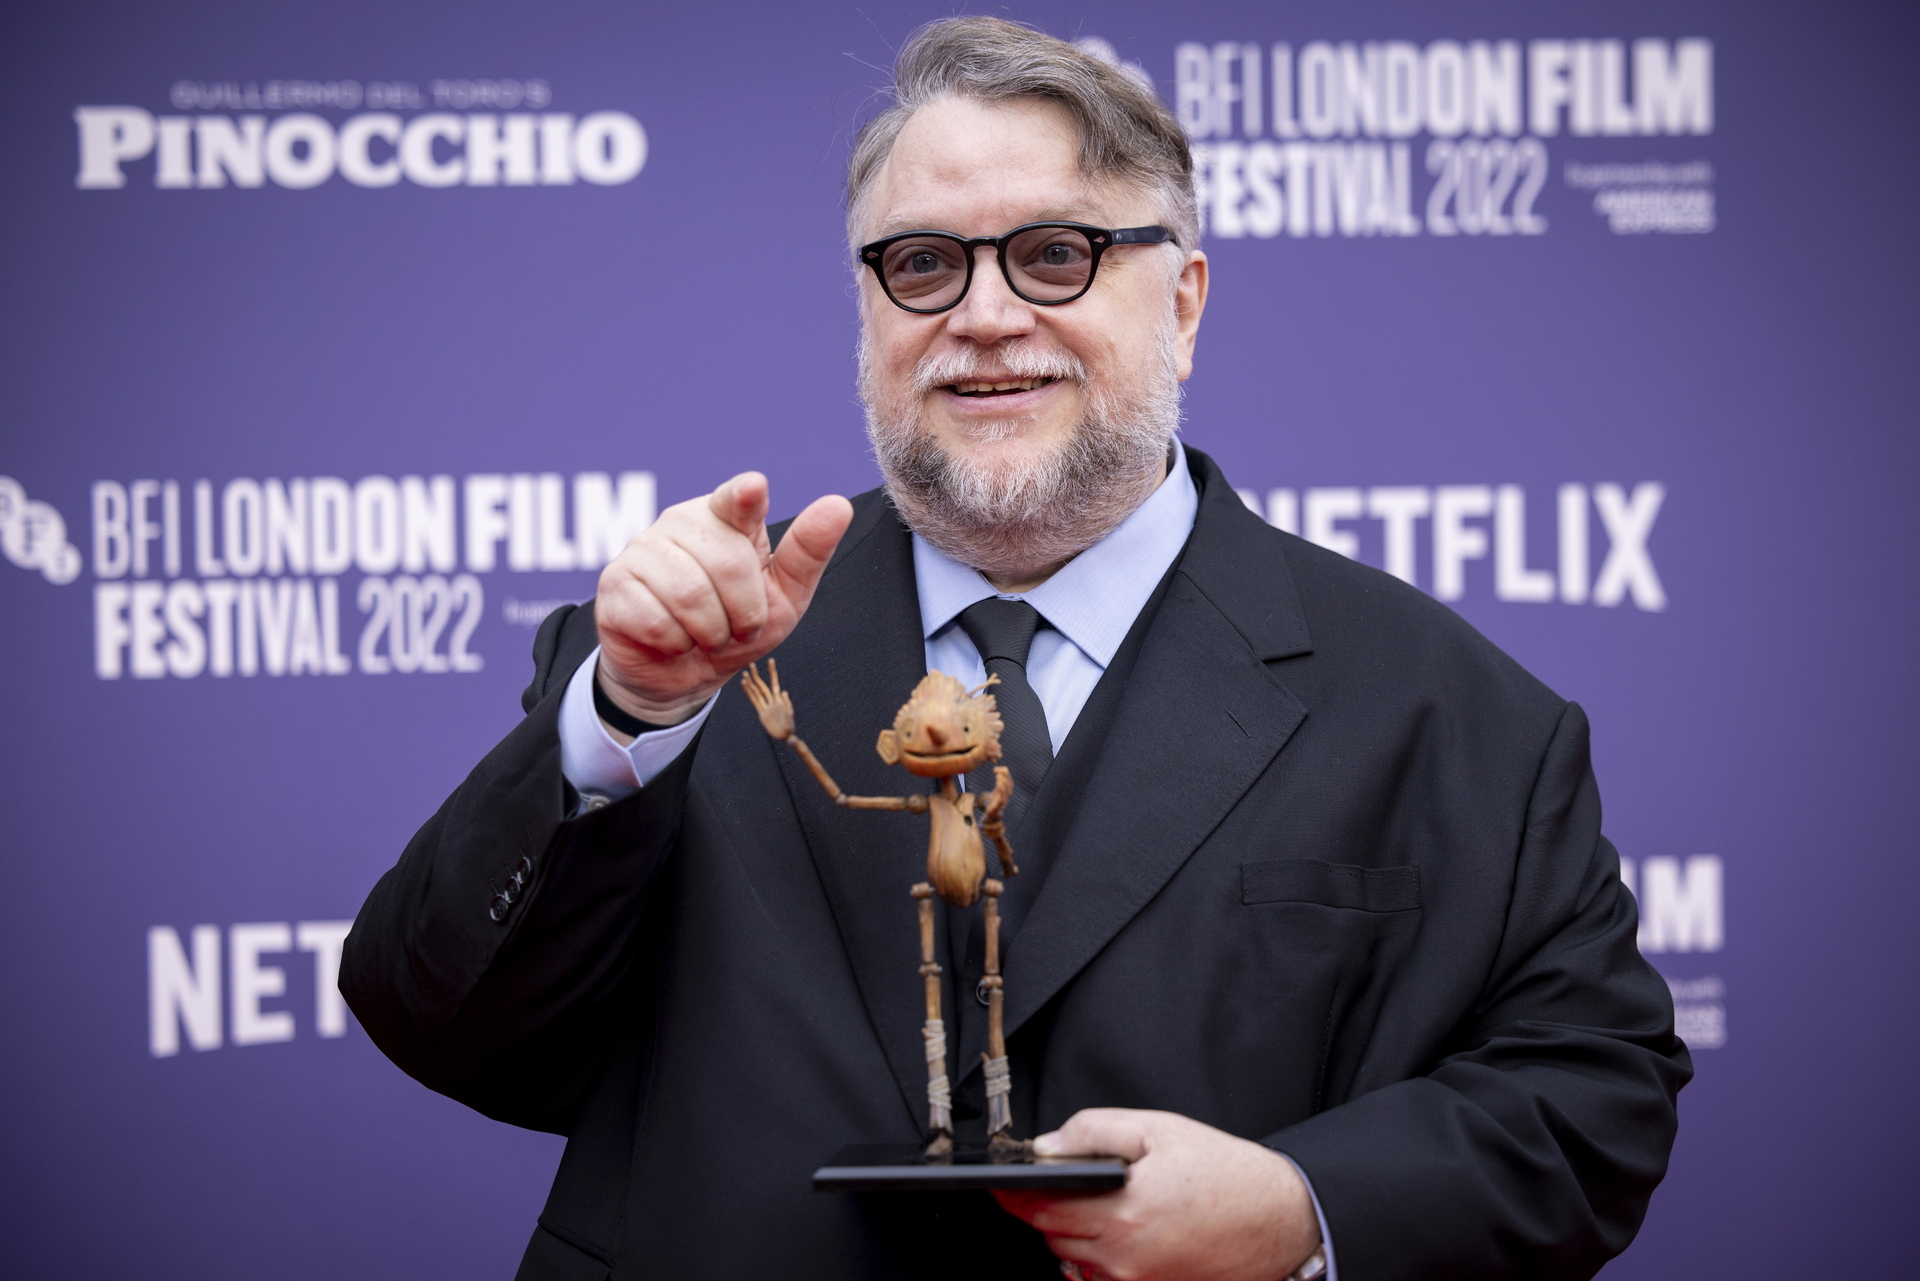 Pinocchio de Guillermo del Toro recibe 3 nominaciones a los Globos de Oro